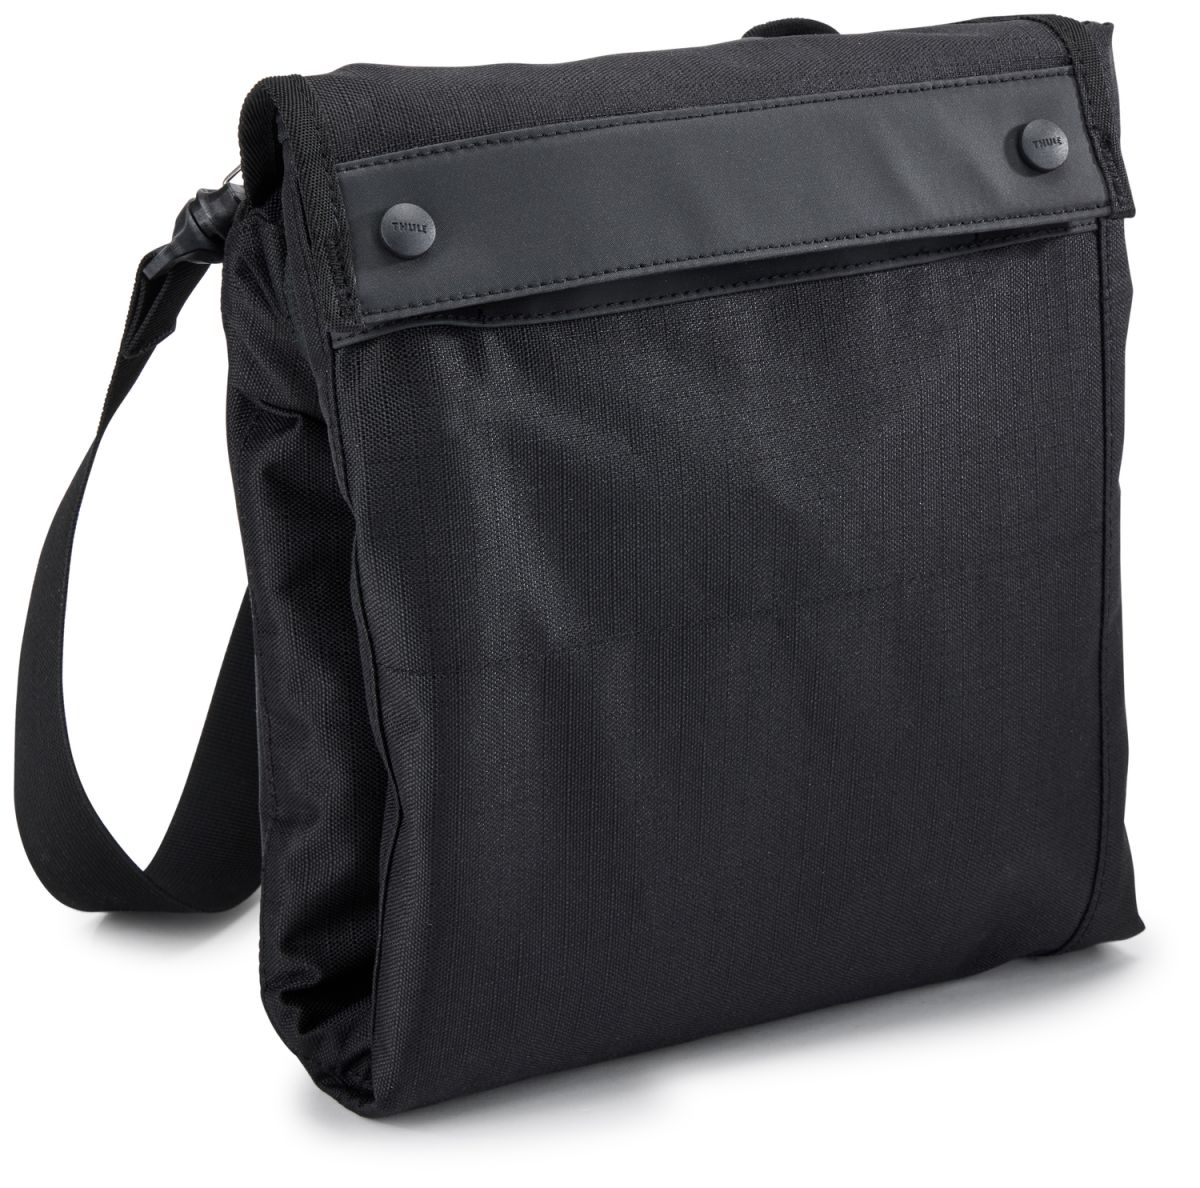 Náhled produktu - Thule Stroller Travel Bag Medium